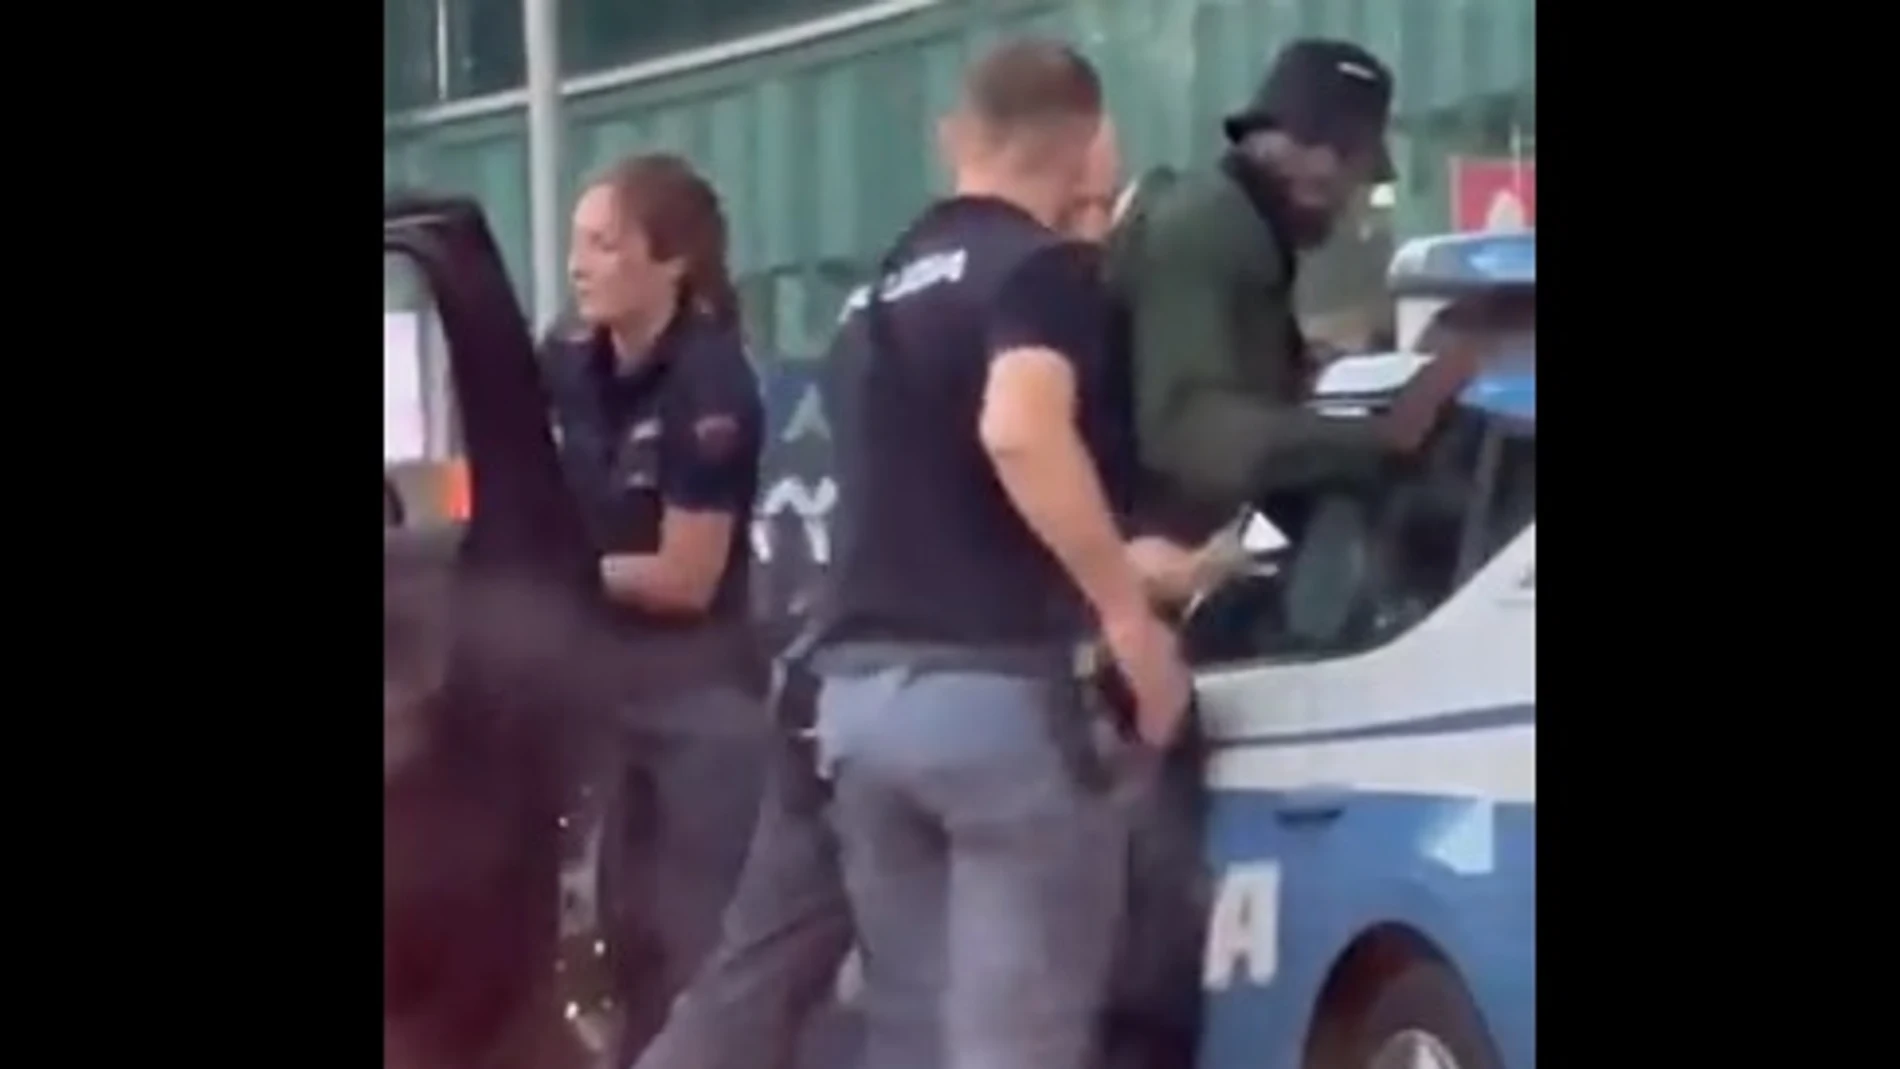 La reacción de la policía italiana al descubrir que el hombre al que cacheaban era el futbolista Bakayoko